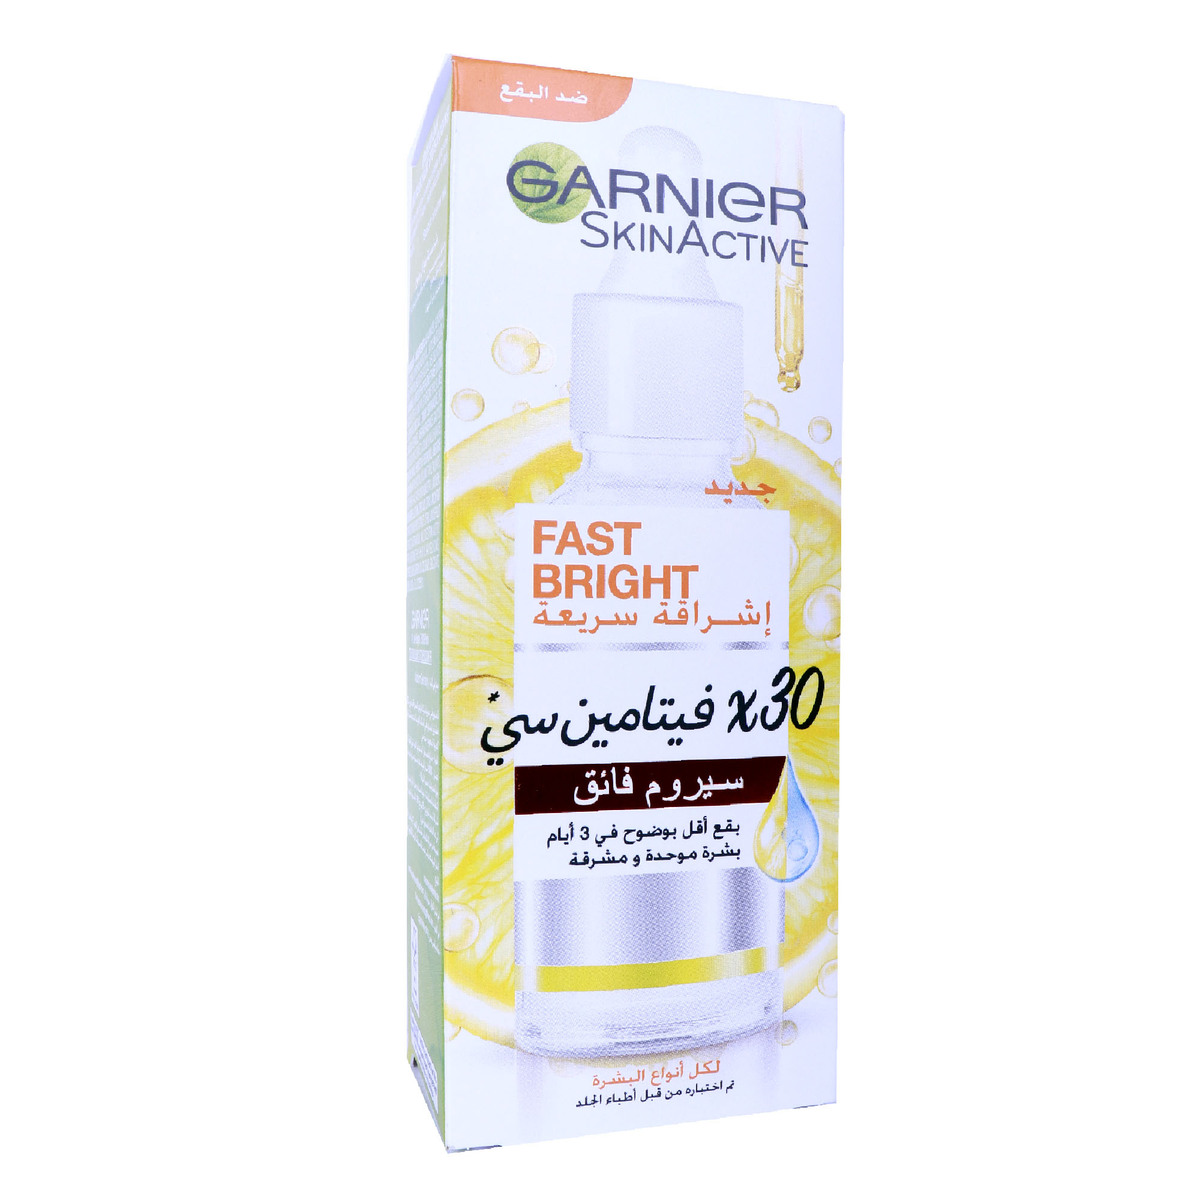 Garnier Skin Active Fast Bright Vitamin C Booster Serum 30ml